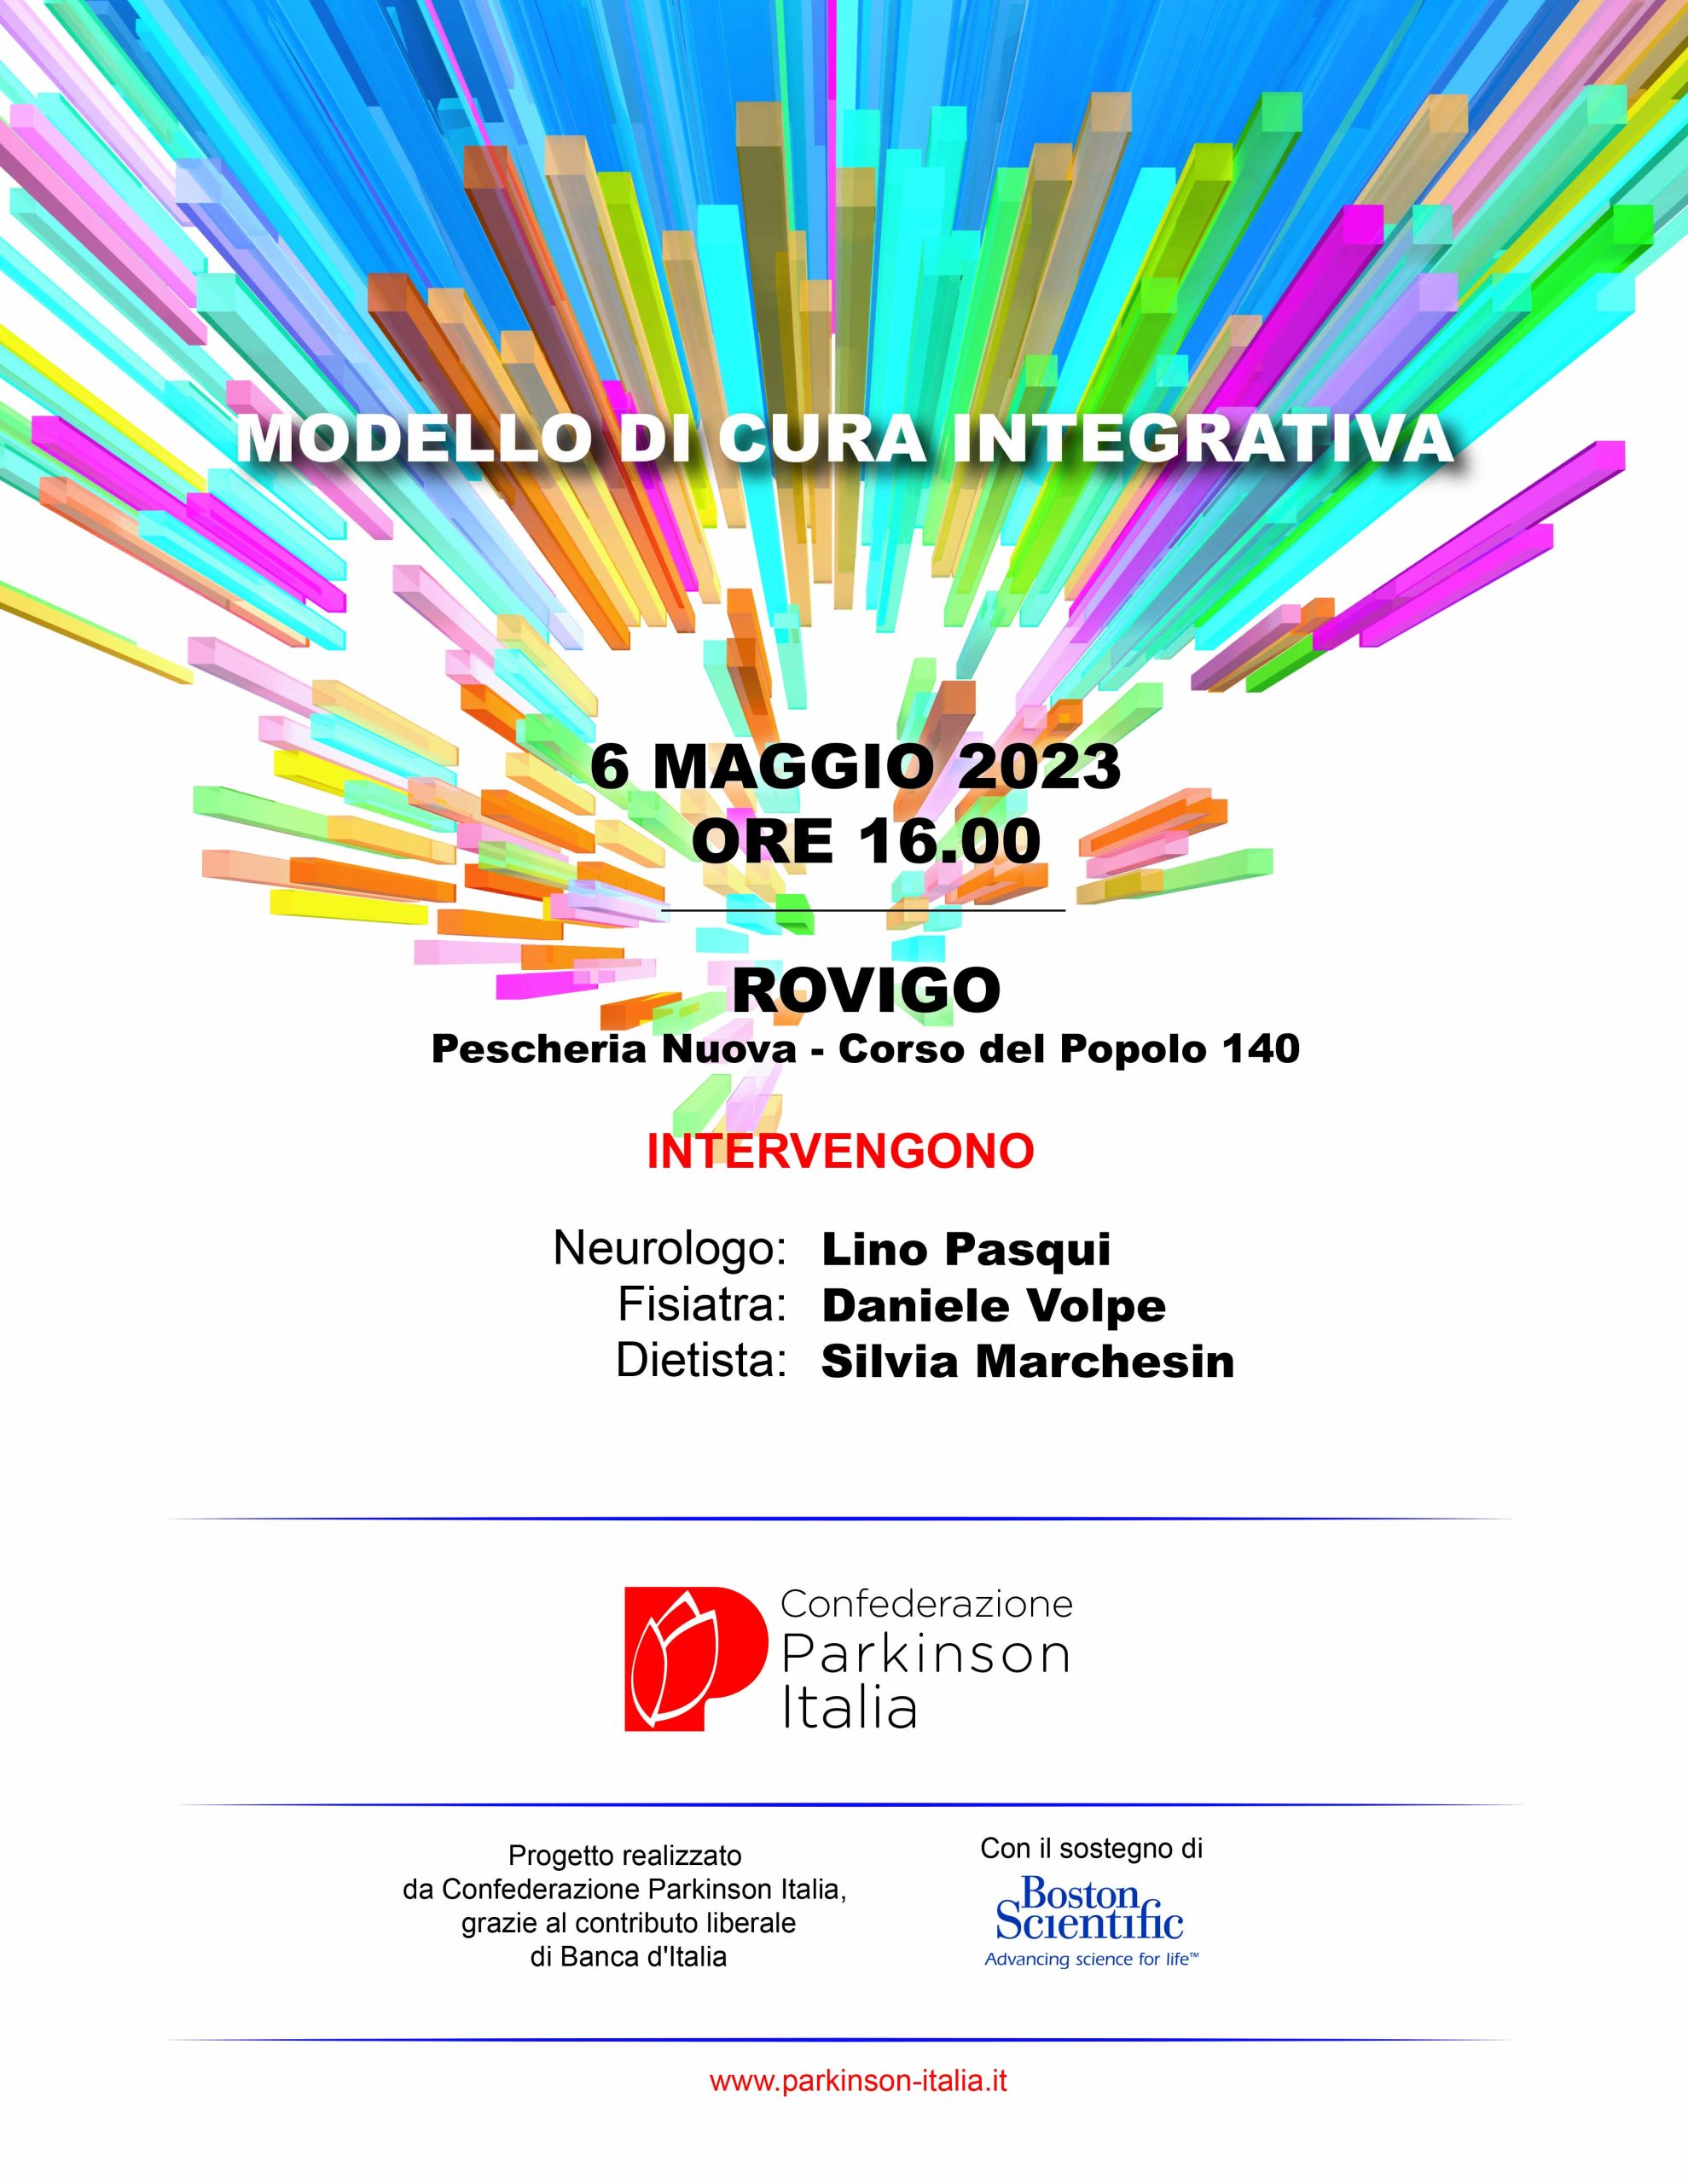 Convegno “Modello di Cura Integrativa” a Rovigo